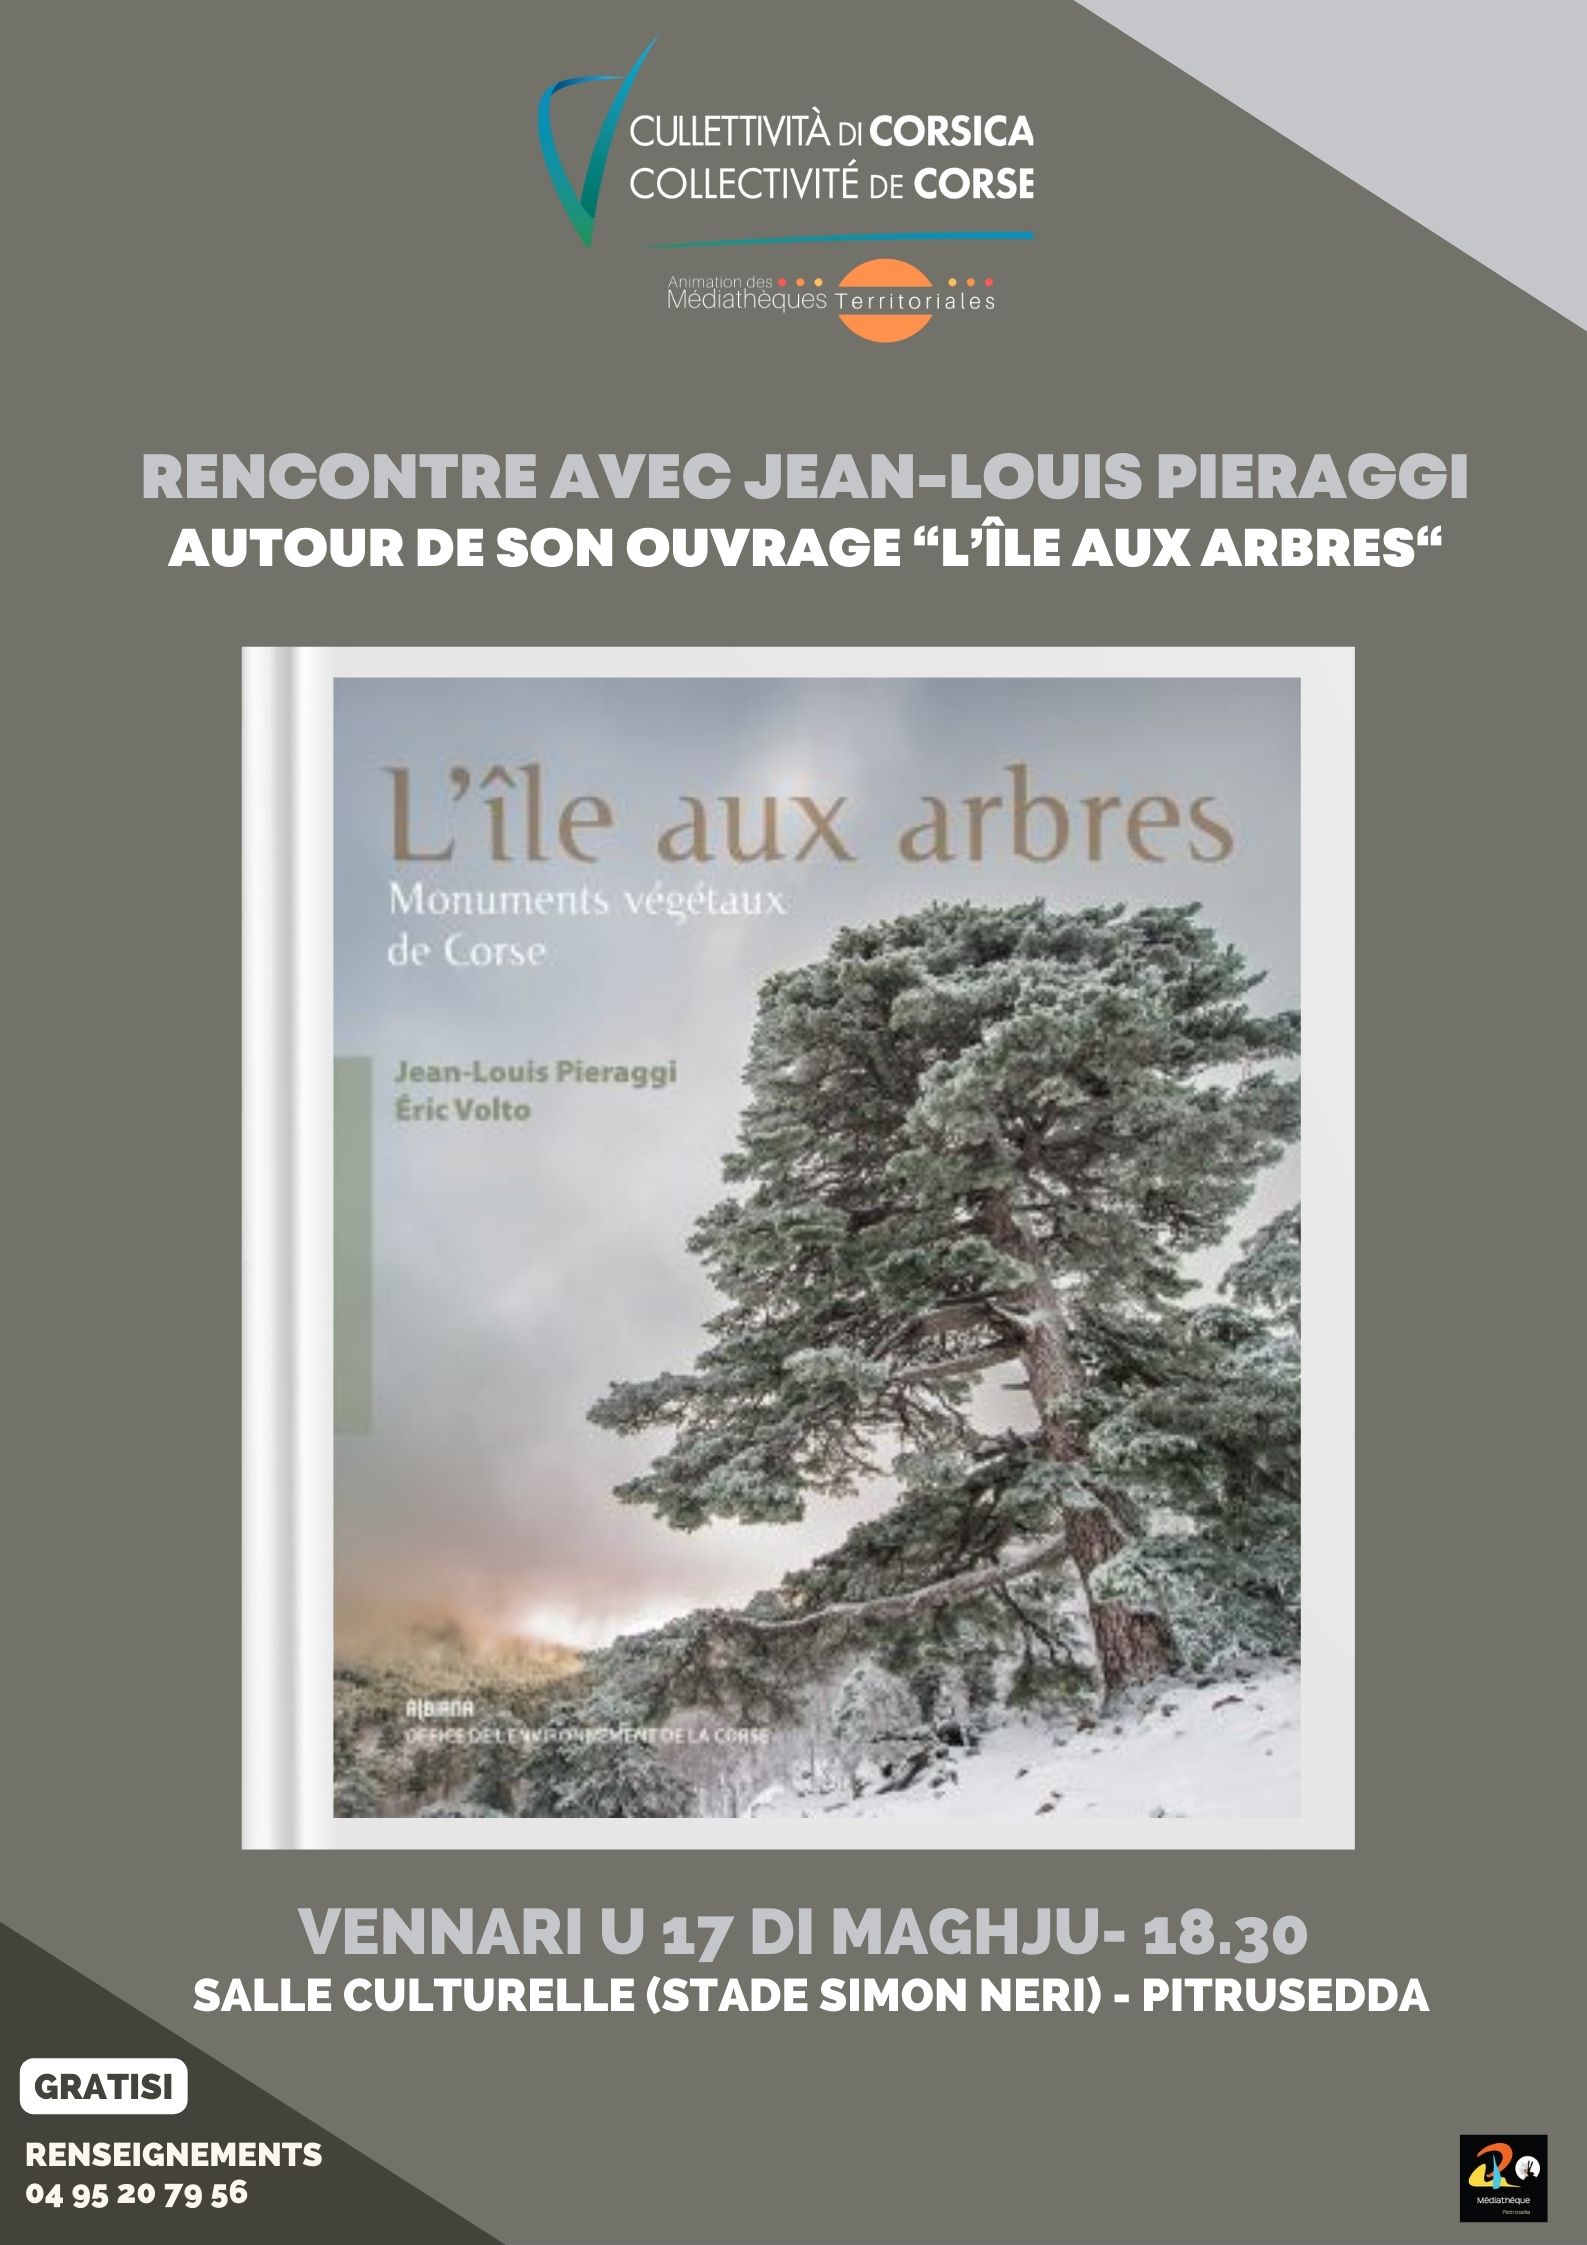 Rencontre avec Jean-Louis Pieraggi autour de son ouvrage "L'île aux arbres"